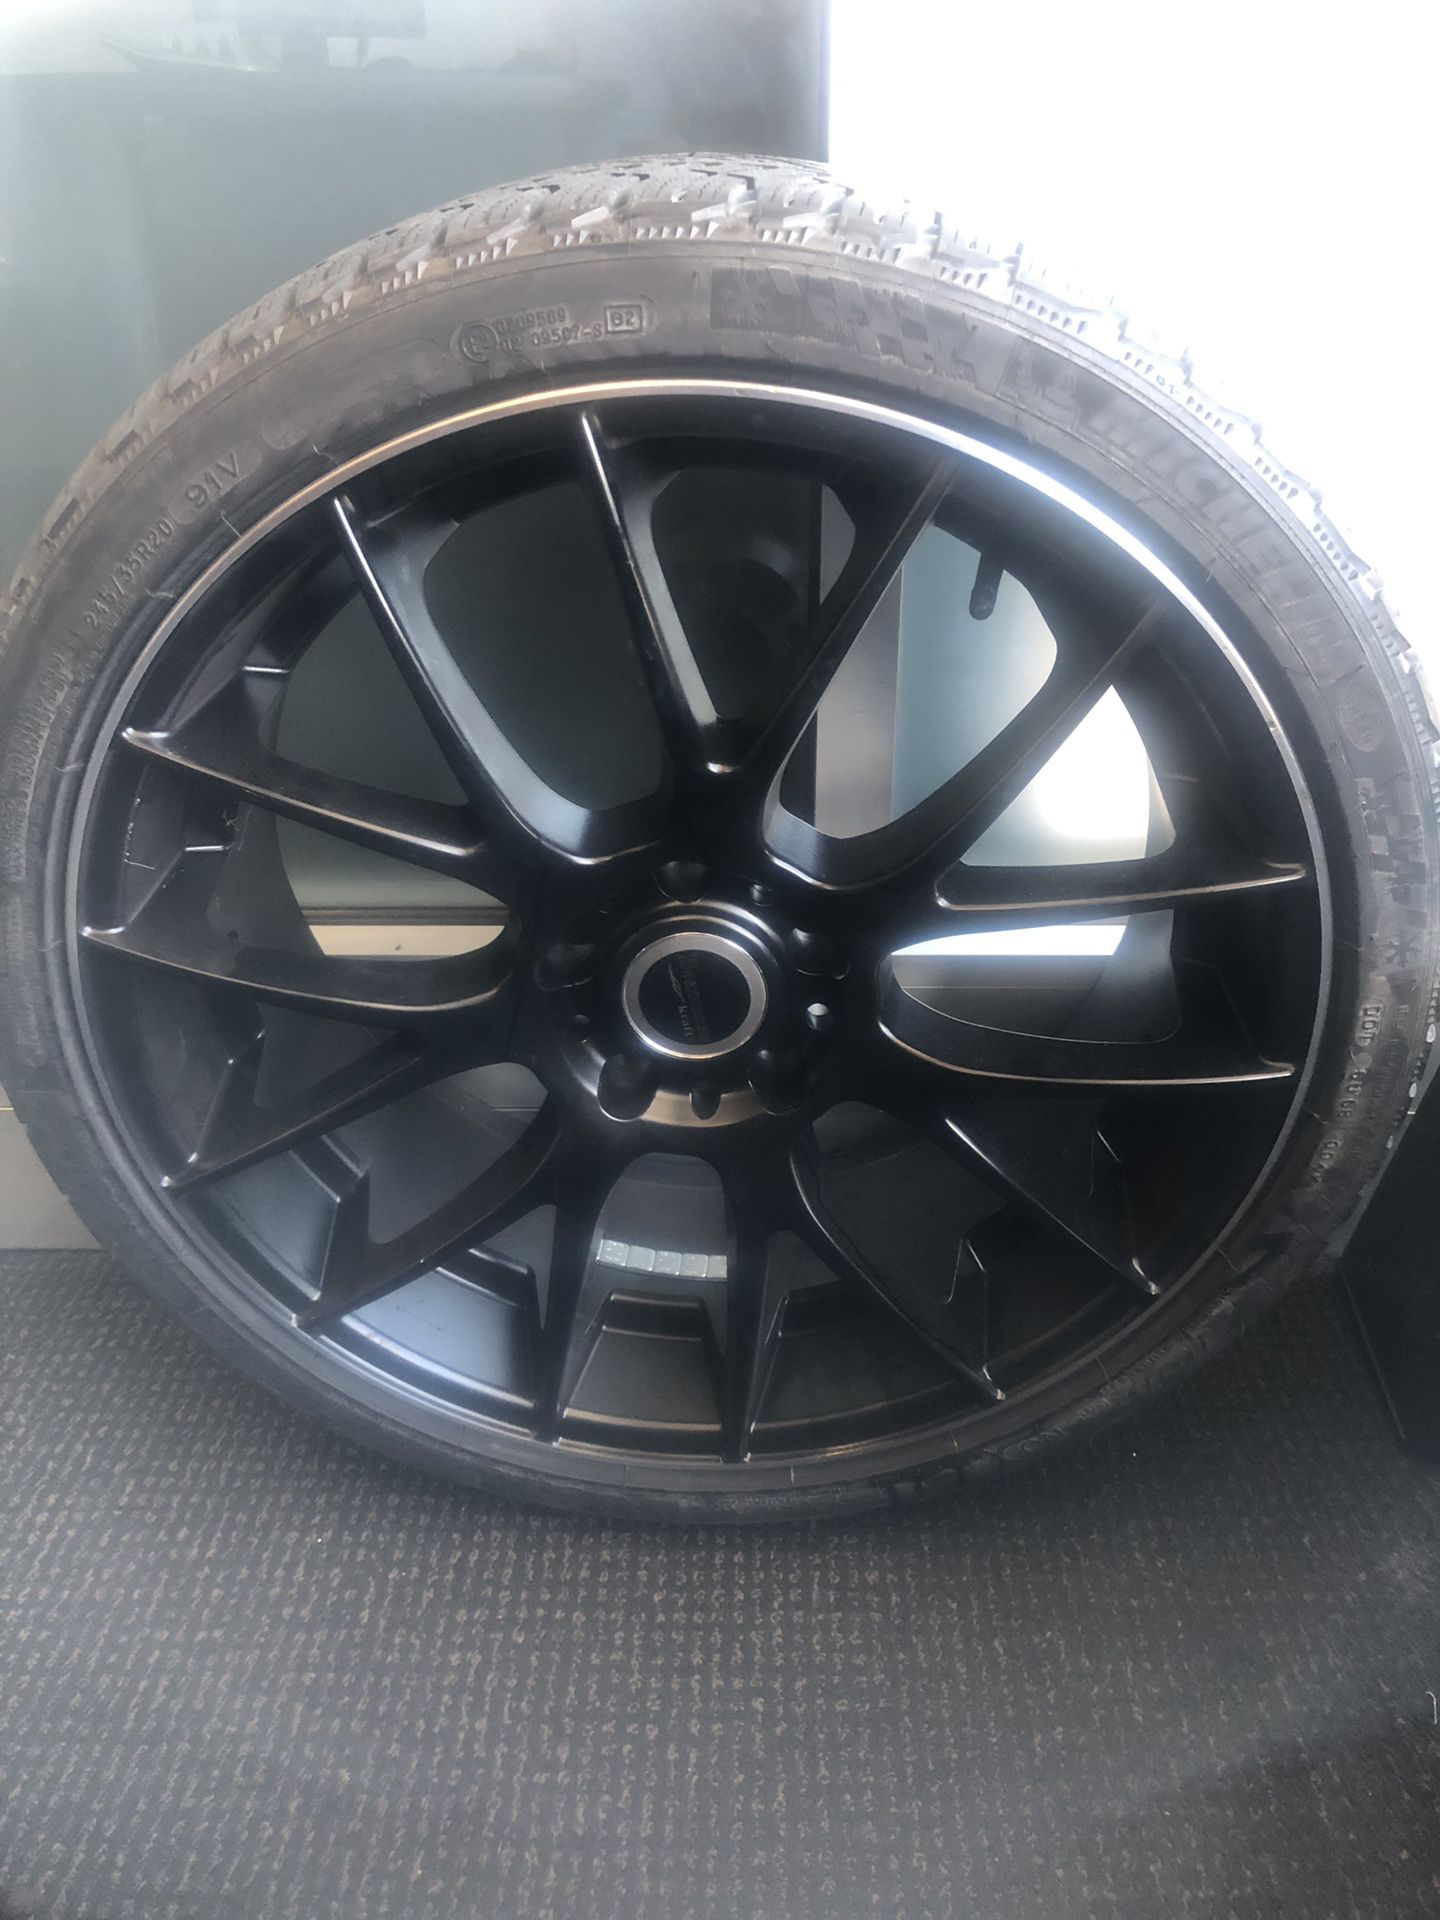 Brand new Michelin tire and rim 20”